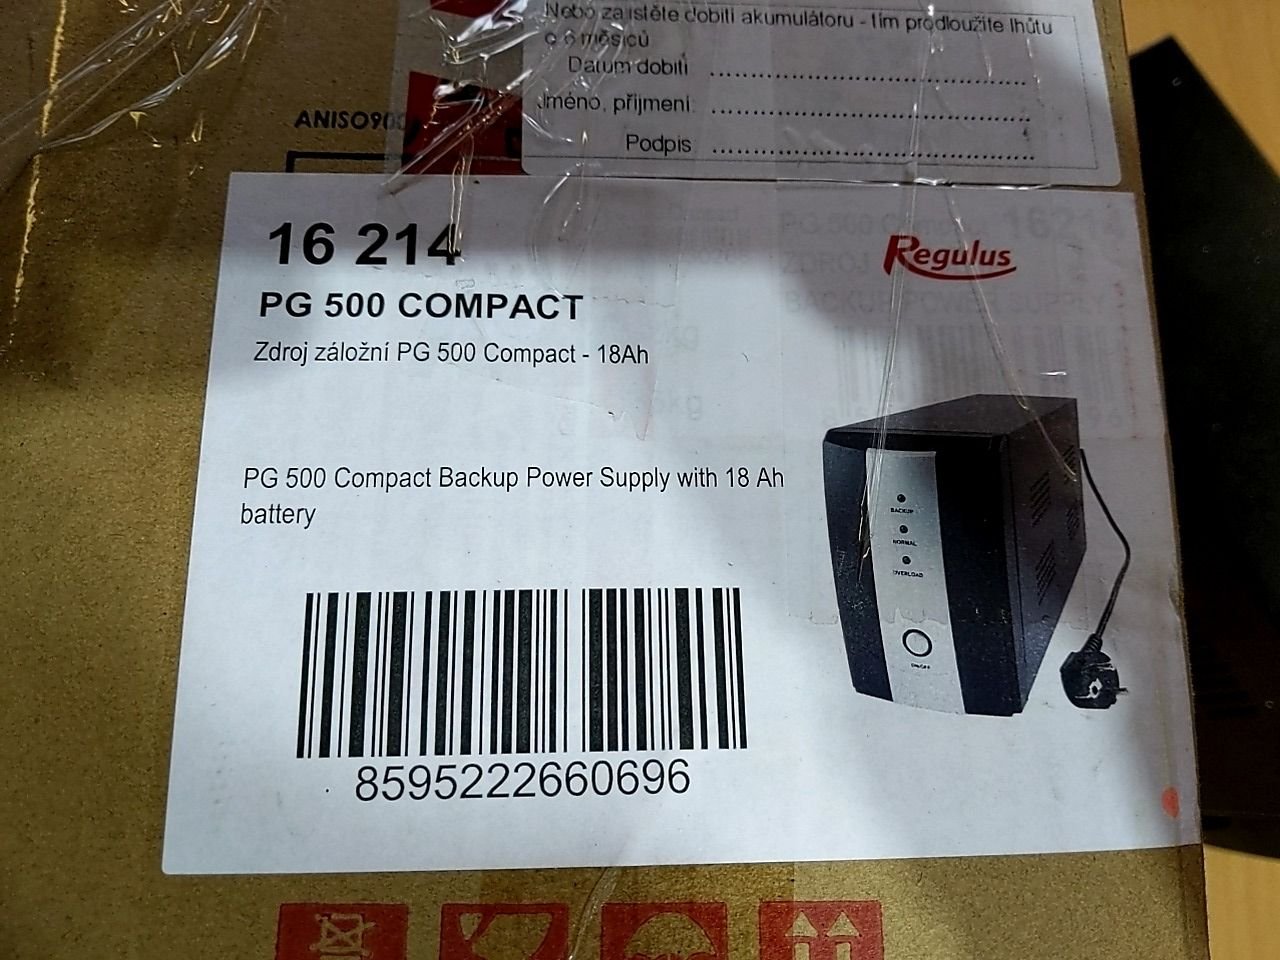 Záložní zdroj Regulus PG 500 Compact